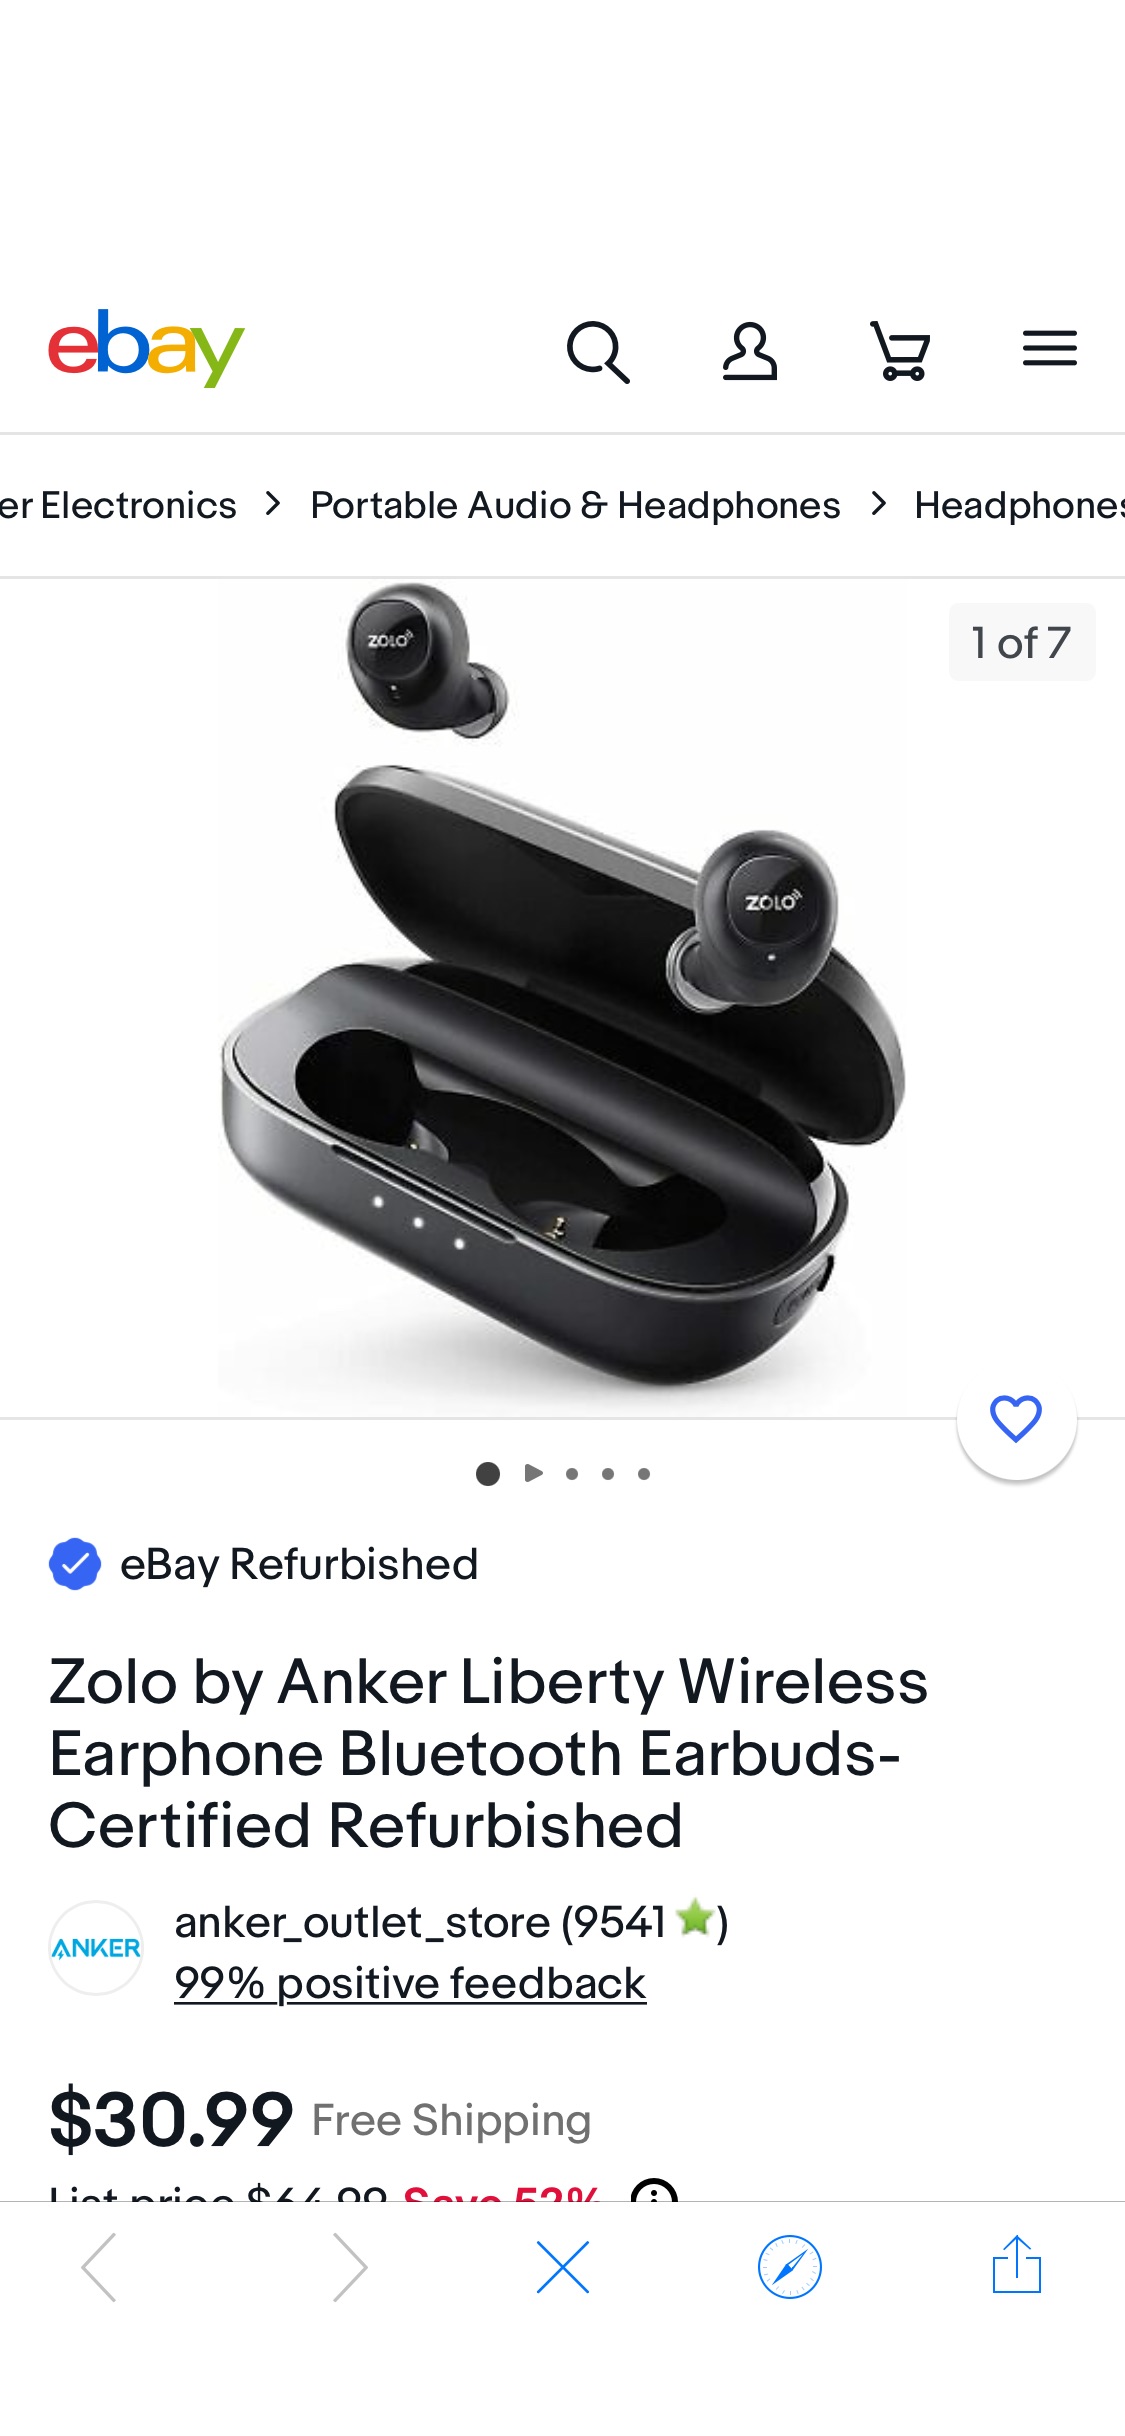 Zolo by Anker Liberty Wireless Earphone Bluetooth Earbuds-Certified Refurbished 194644161637 | eBay 耳机